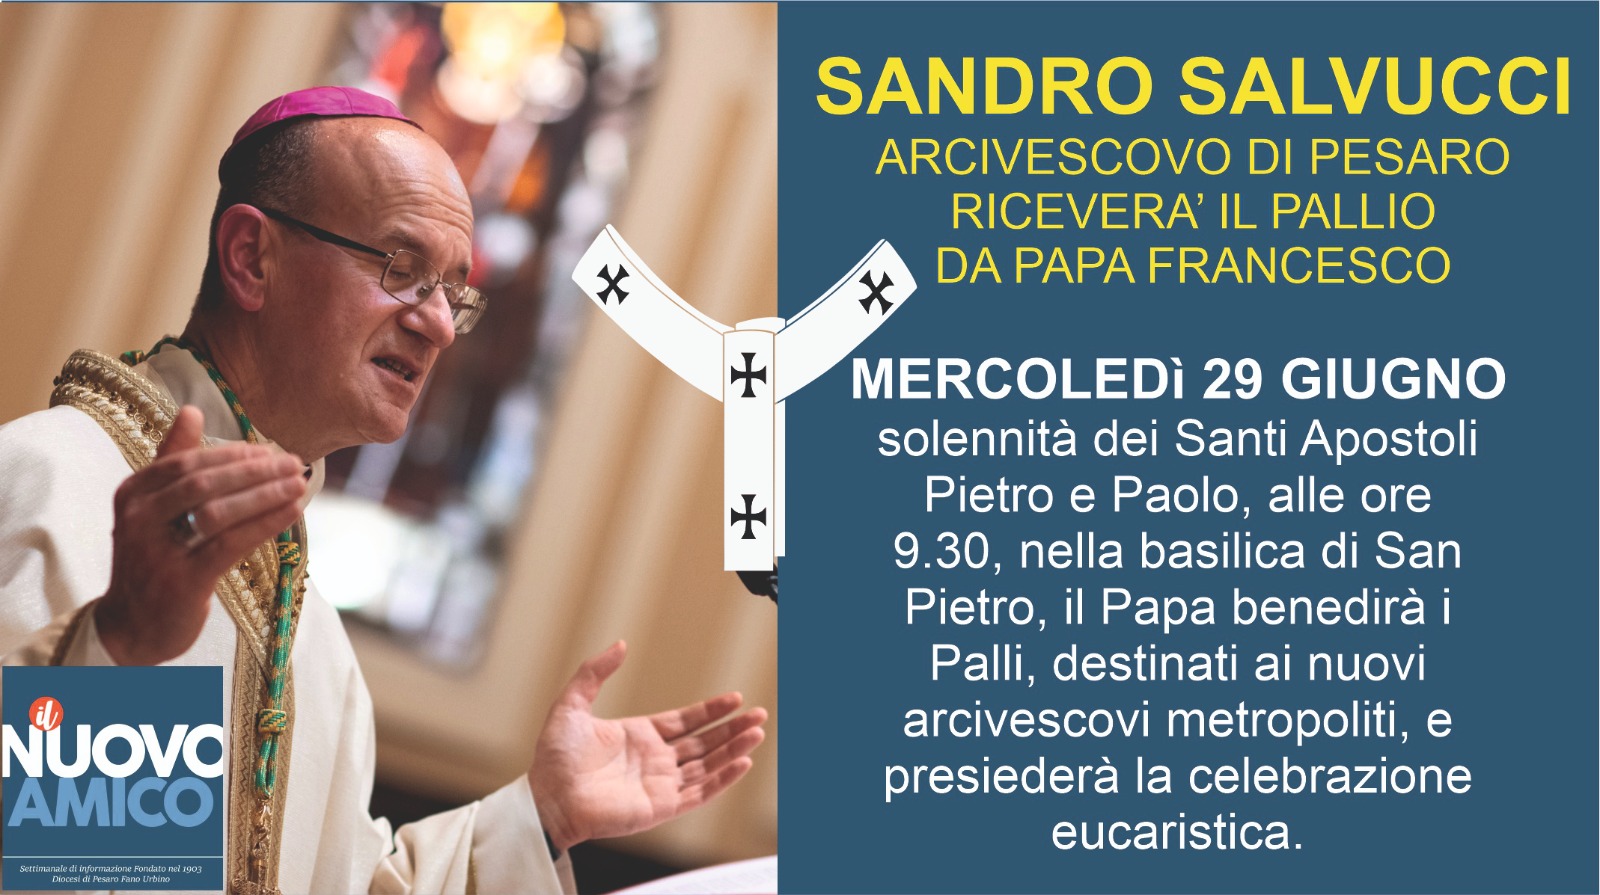 L’ARCIVESCOVO SANDRO SALVUCCI RICEVERA’ IL PALLIO DAL PAPA – Basilica di S. Pietro – Mercoledì 29 giugno ore 9.30